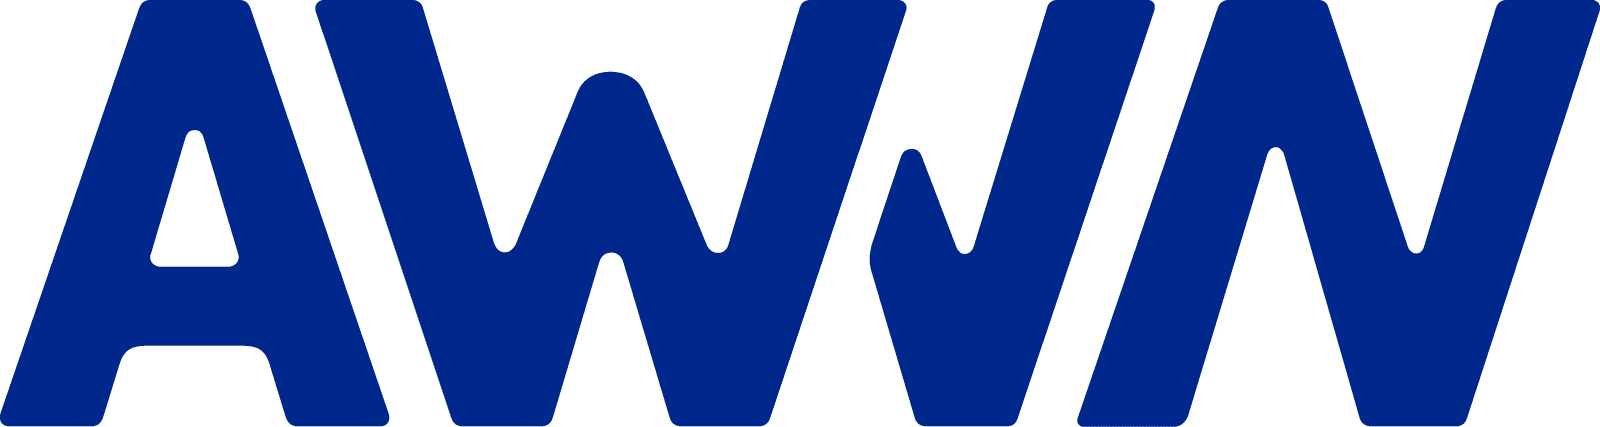 AWVN_Logo_Blue_WEB-1600px